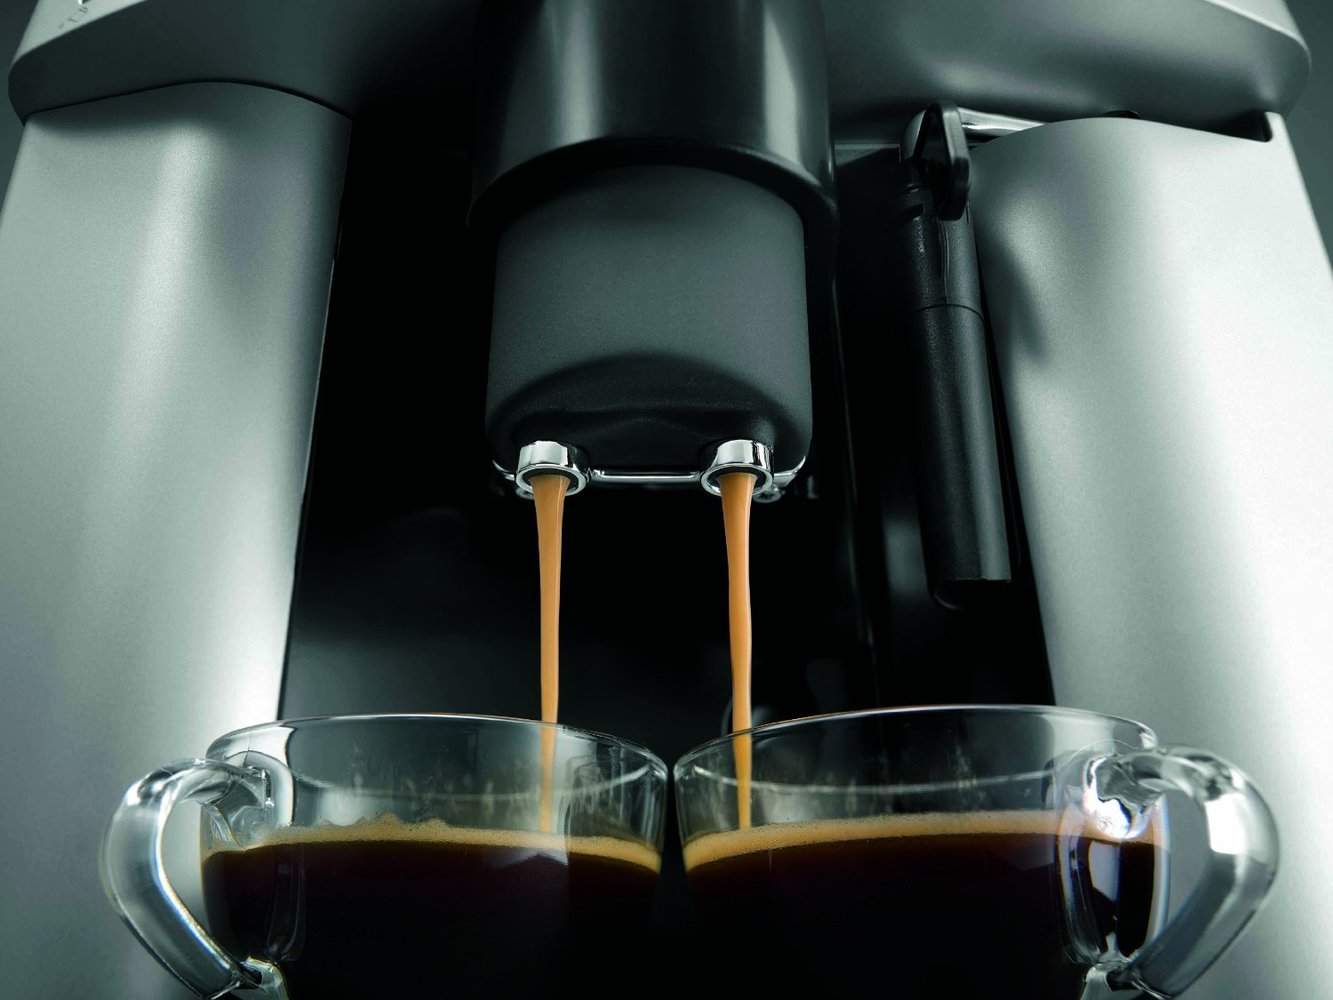 Maquina De Espresso Delonghi Magnifica, 1.8 Litros, Negro